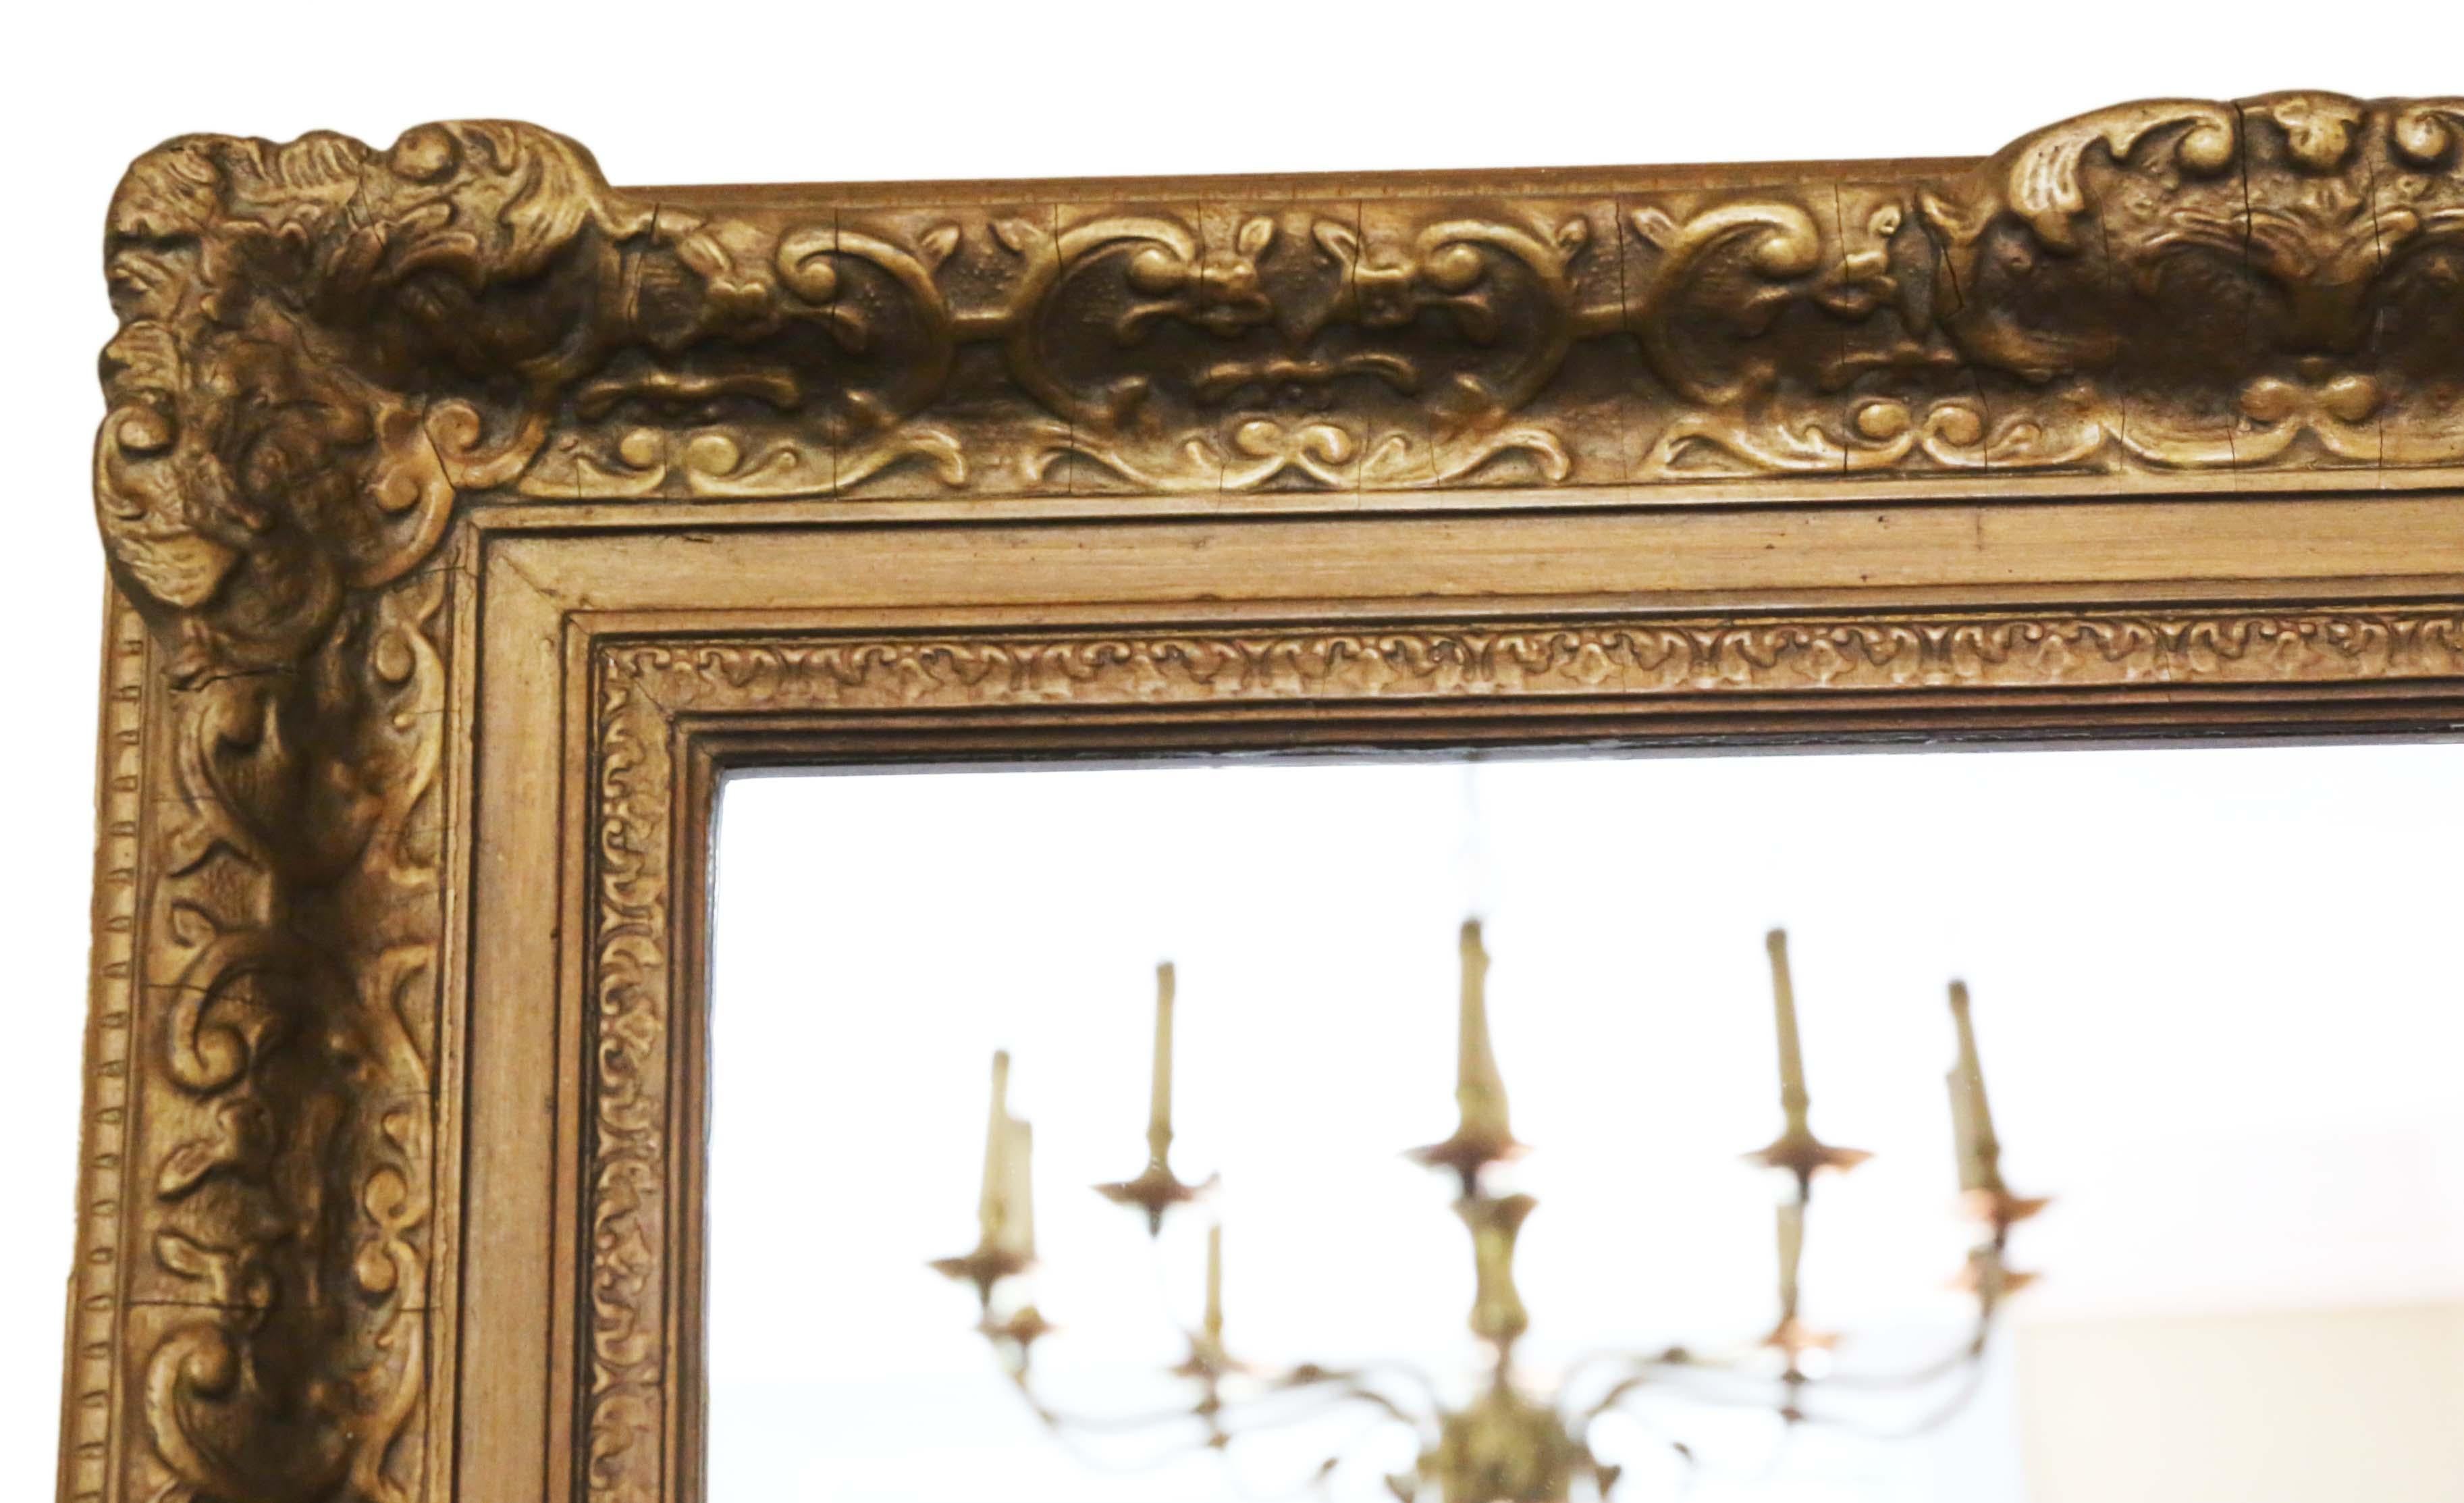 Grand miroir antique de qualité du 19e siècle, doré, en forme de manteau ou de miroir mural. Un bon look.
Un miroir charmant, qui est plein d'âge et de caractère. Joli cadre avec quelques pertes, retouches et réparations au fil des ans. Pas de